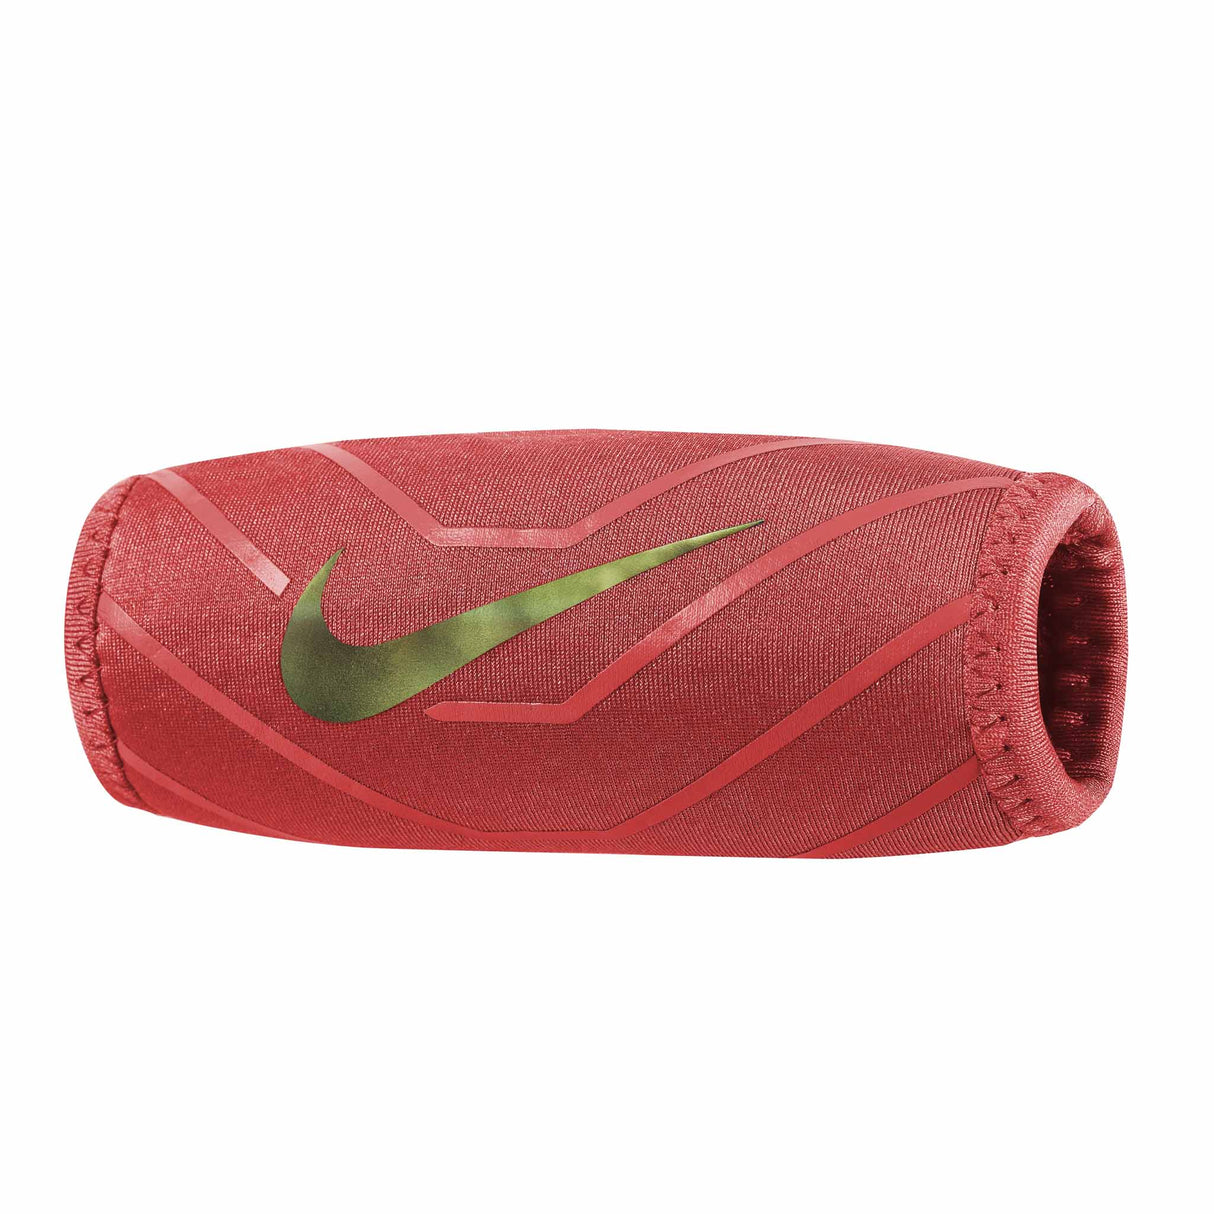 Nike Chin Shield 3.0 pour casque de football americain - Bright Crimson / Multi Iridescent